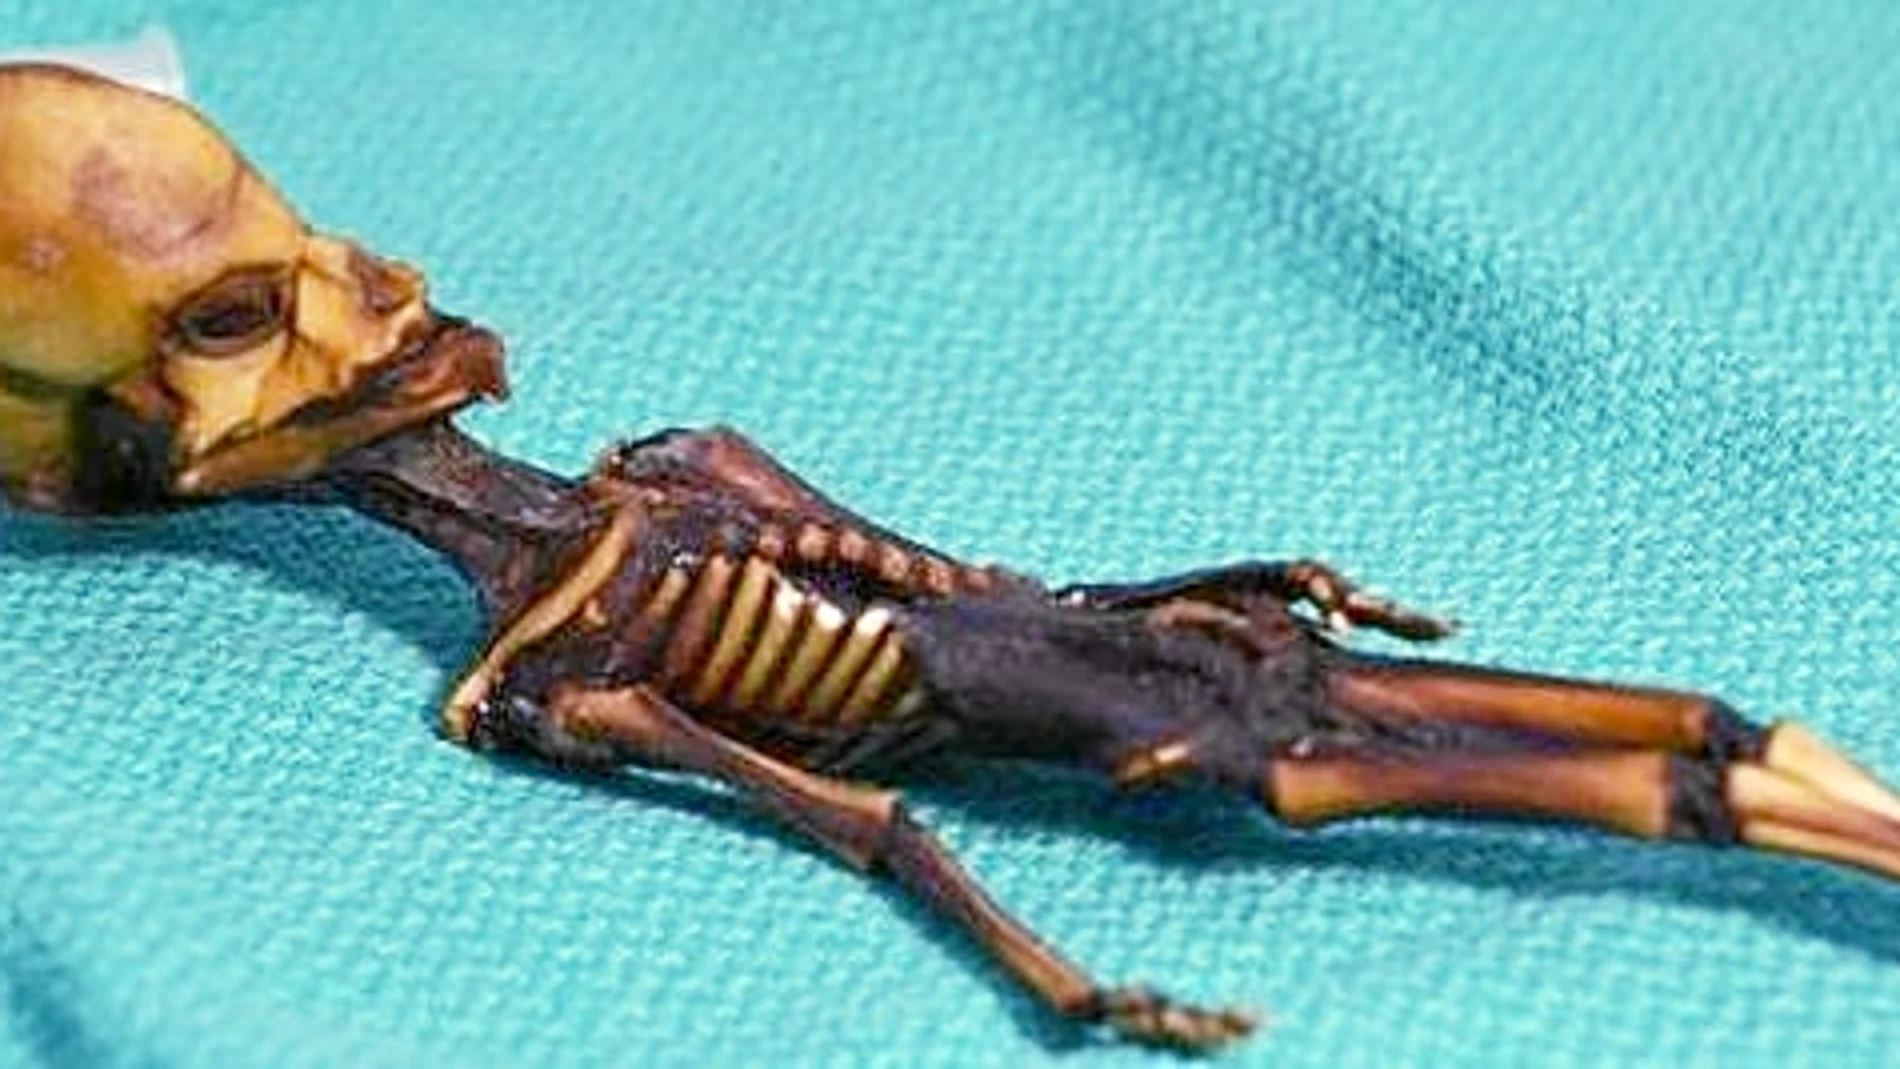 El cuerpo, de 15 centímetros de largo, consta de 10 pares de costillas y huesos que se asemejan a los huesos de una niña